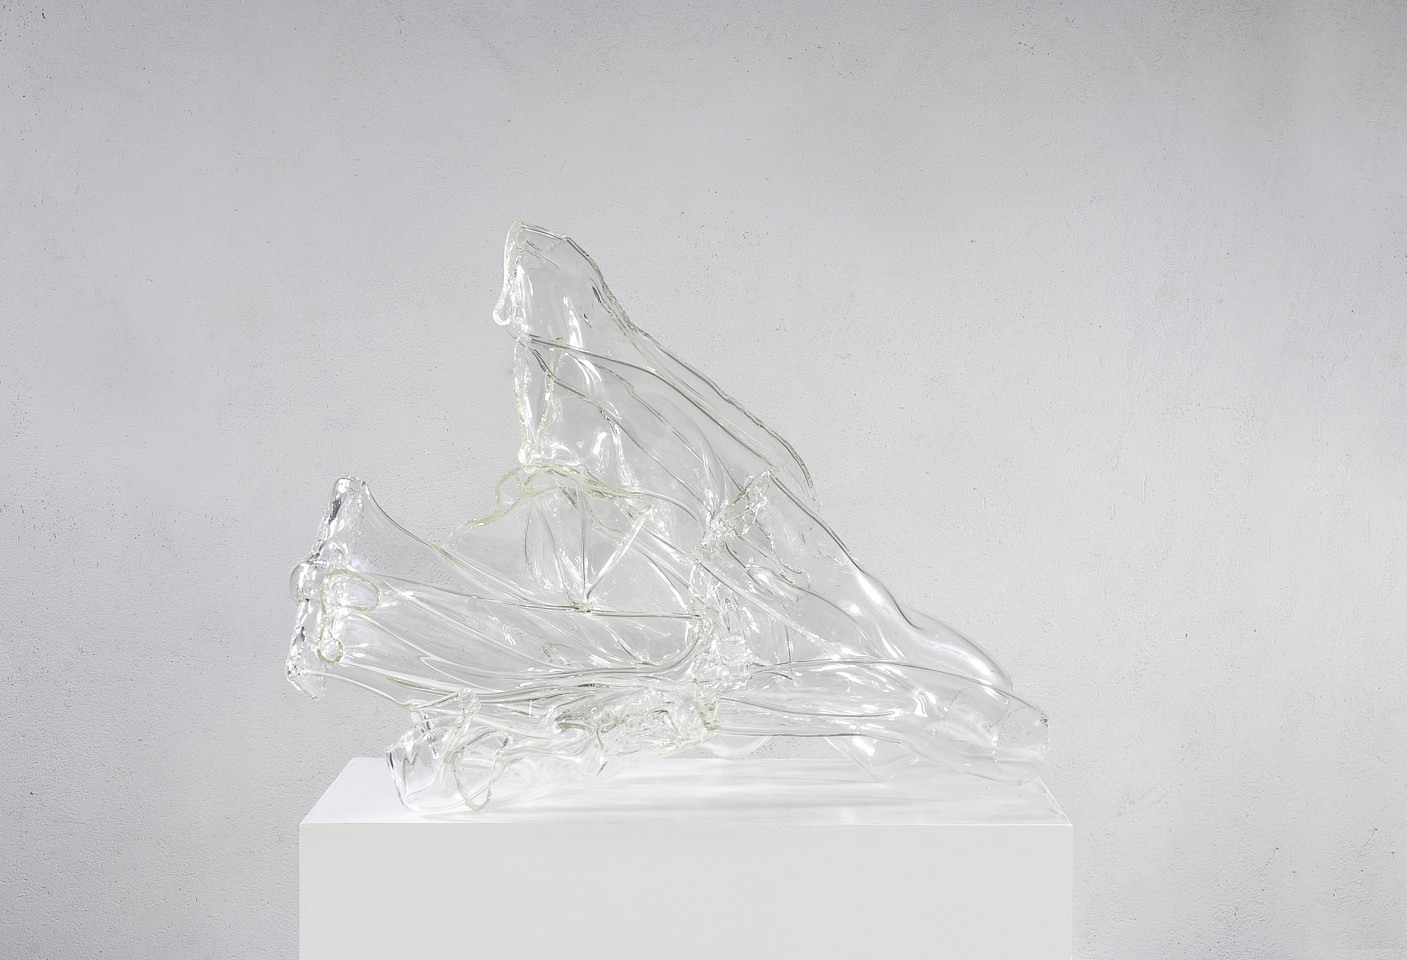 Julius Weiland, Half Moon
2011, Glass